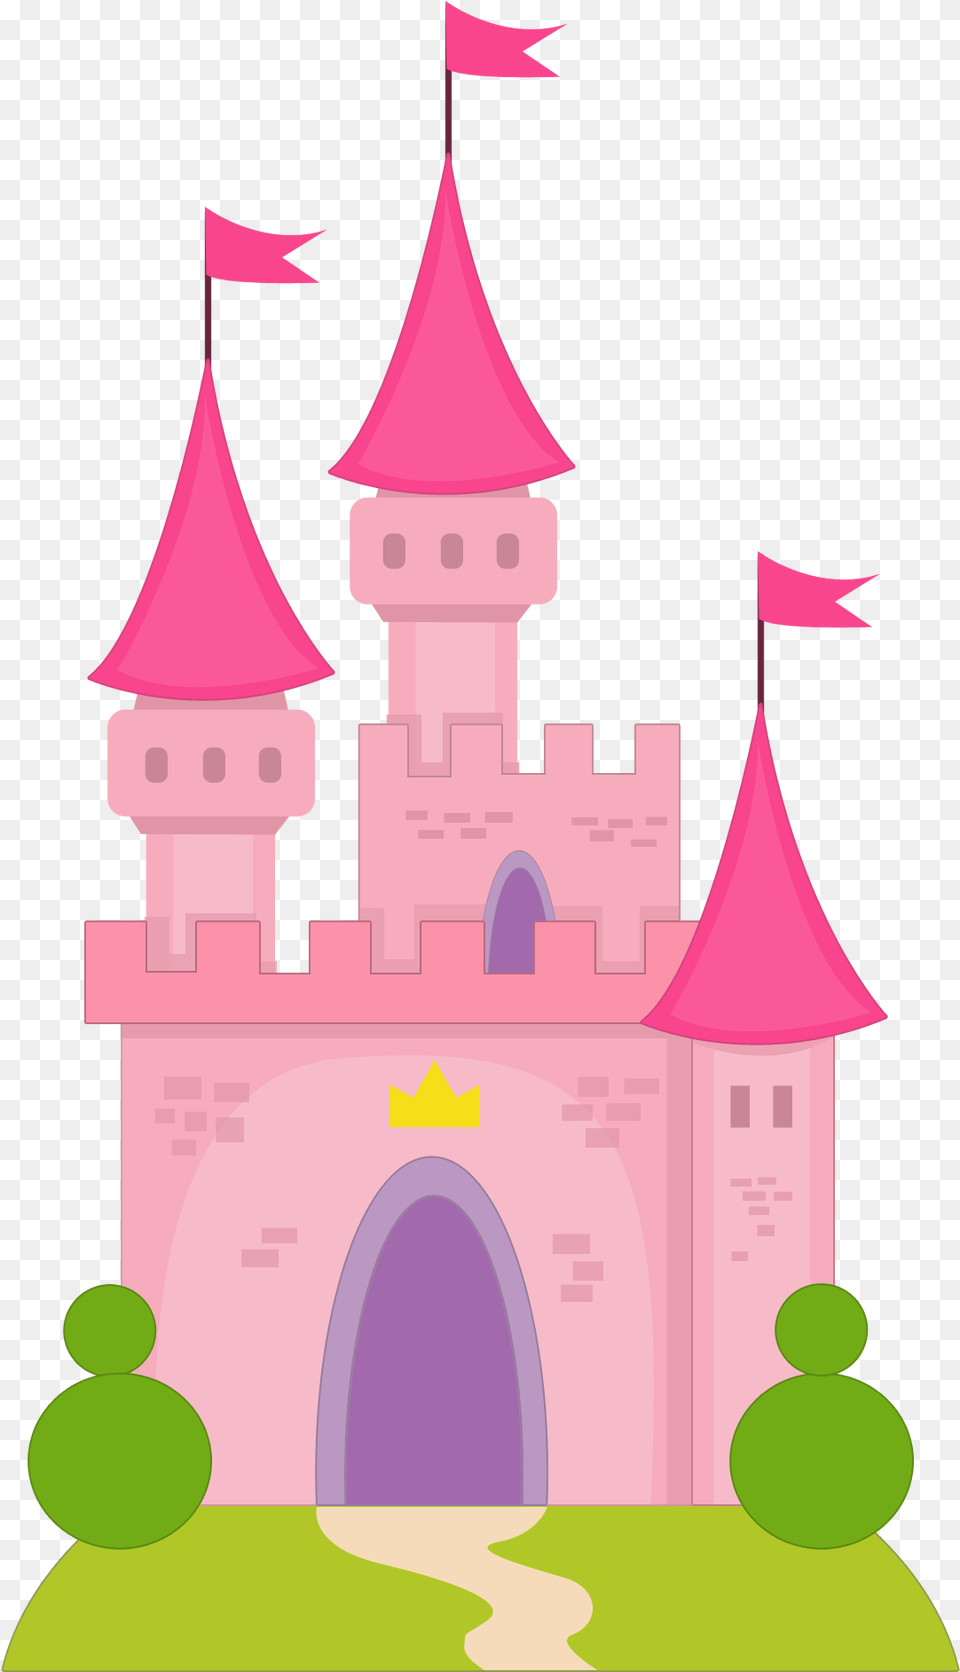 Princesas E Pr Ncipes Dibujo De Un Castillo De Princesas, Architecture, Building, Castle, Fortress Png Image